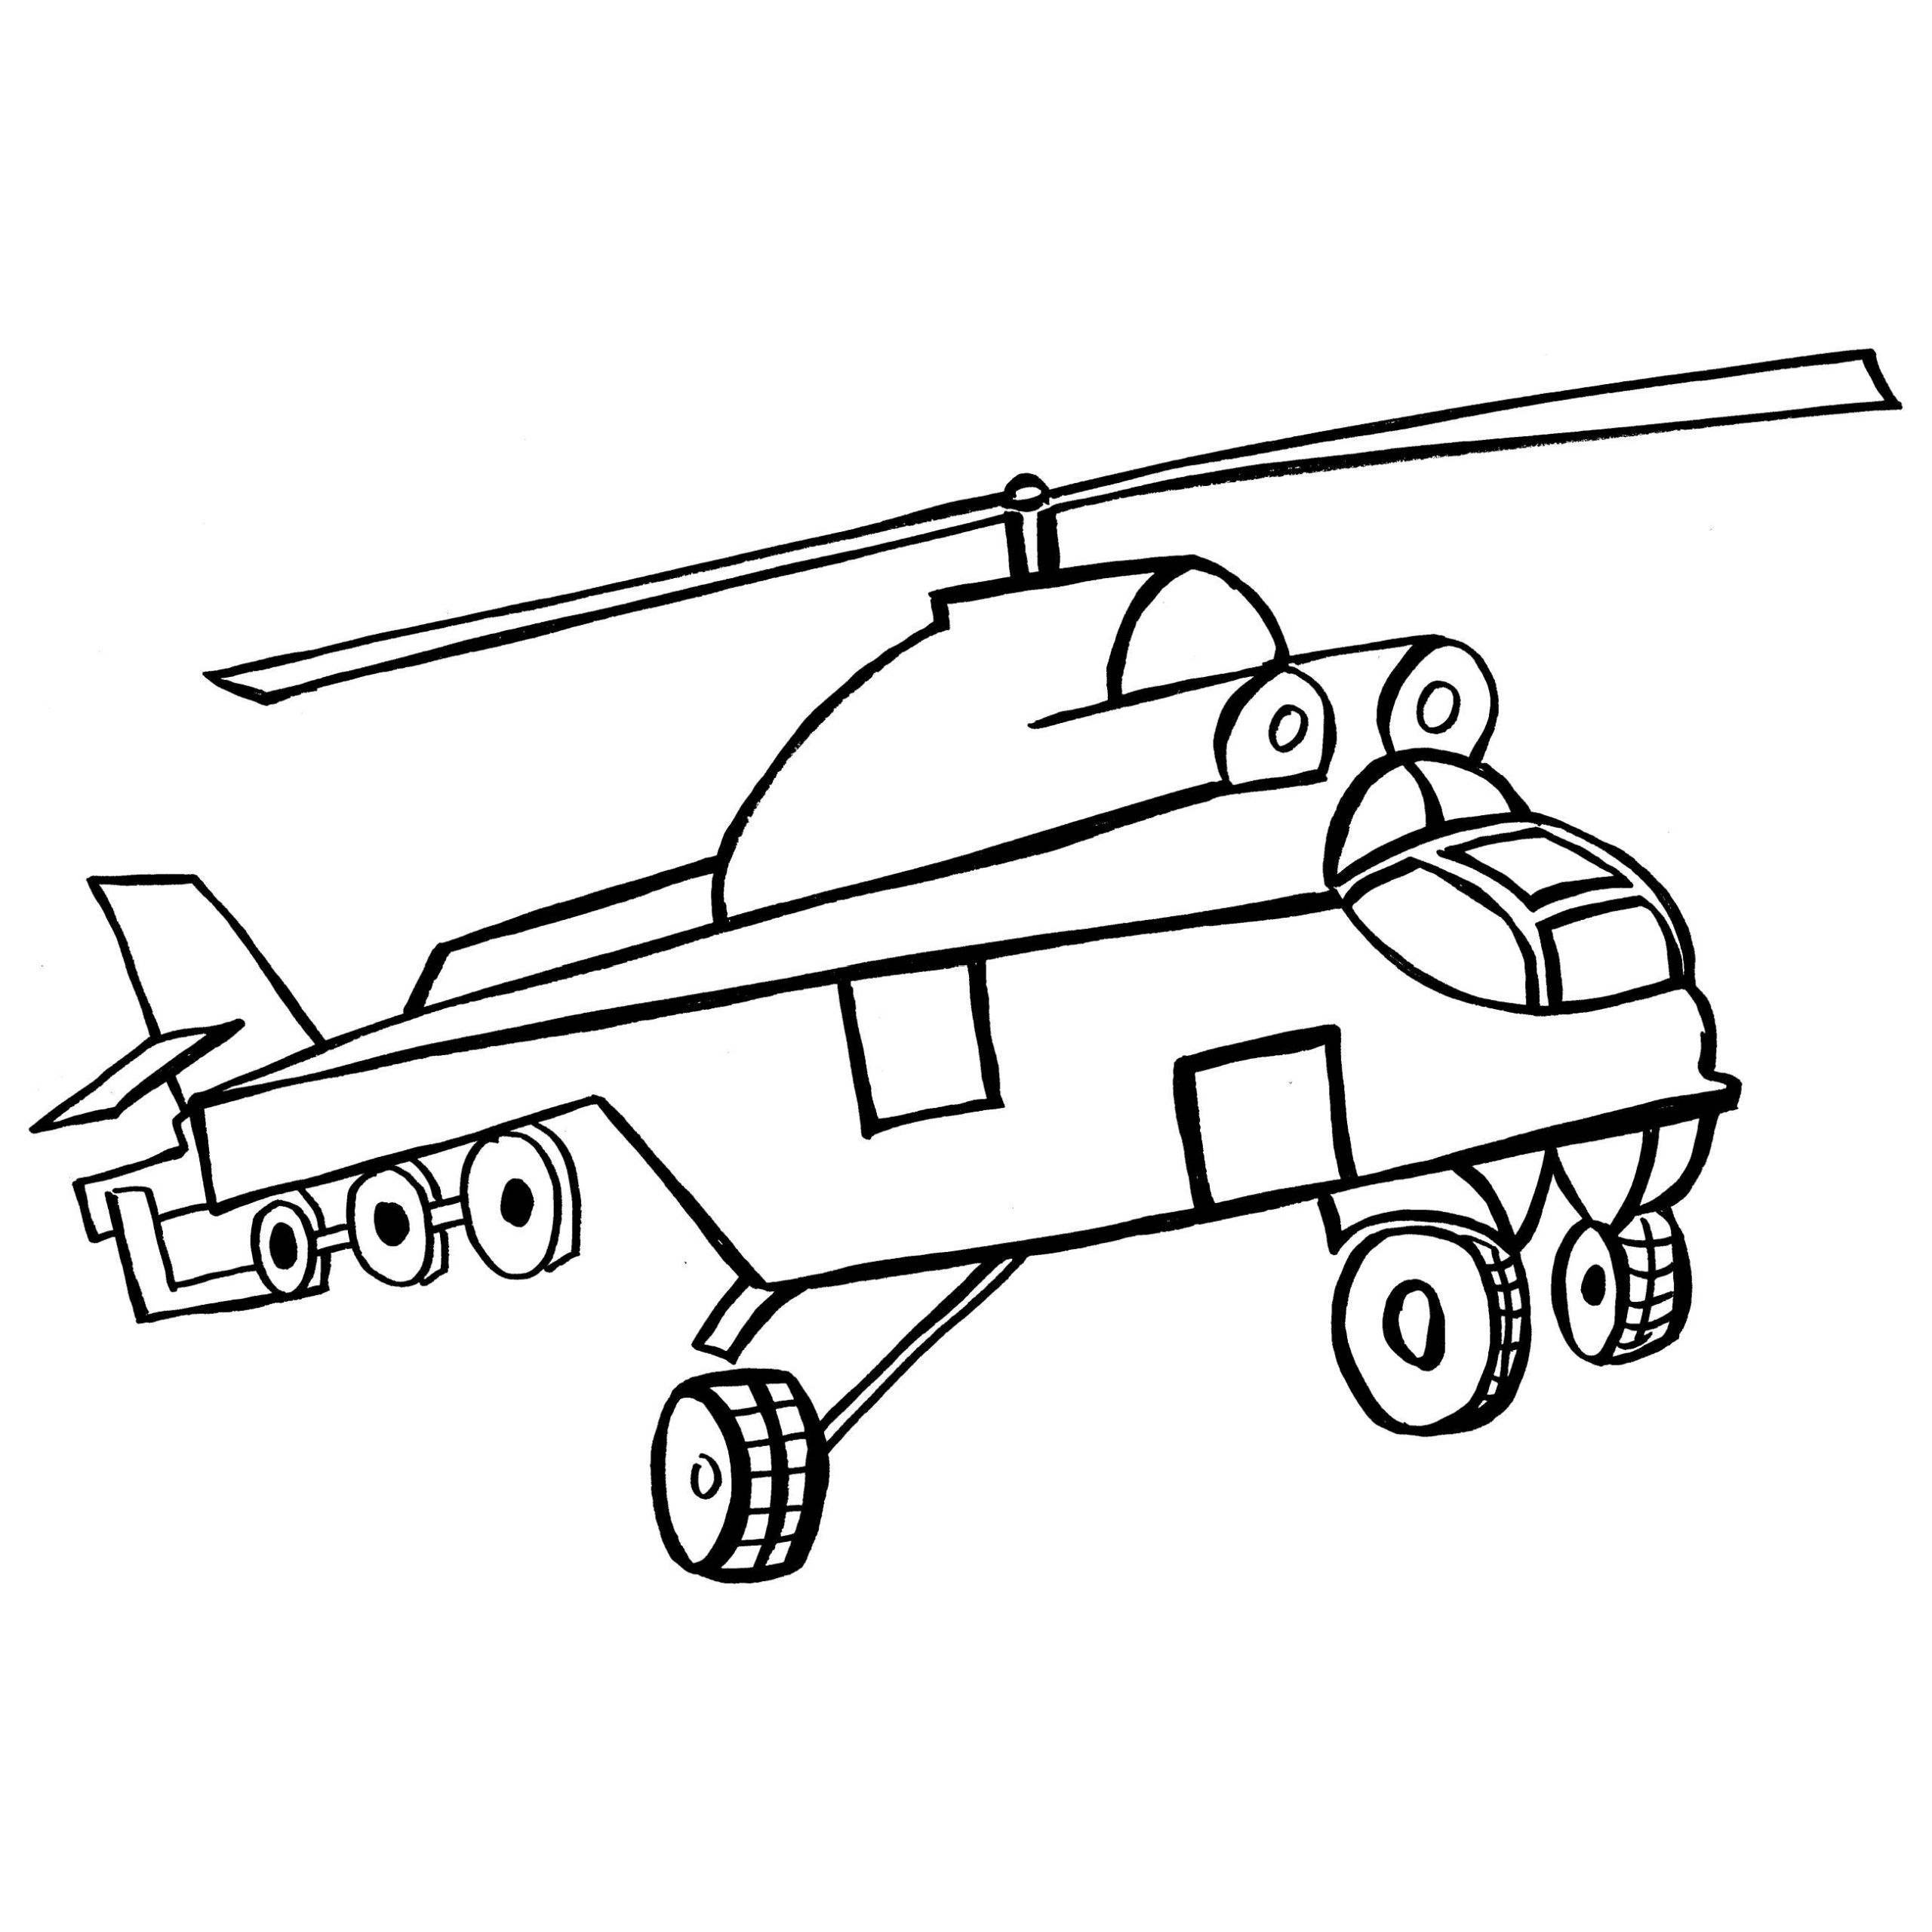 Раскраски самолеты и вертолеты